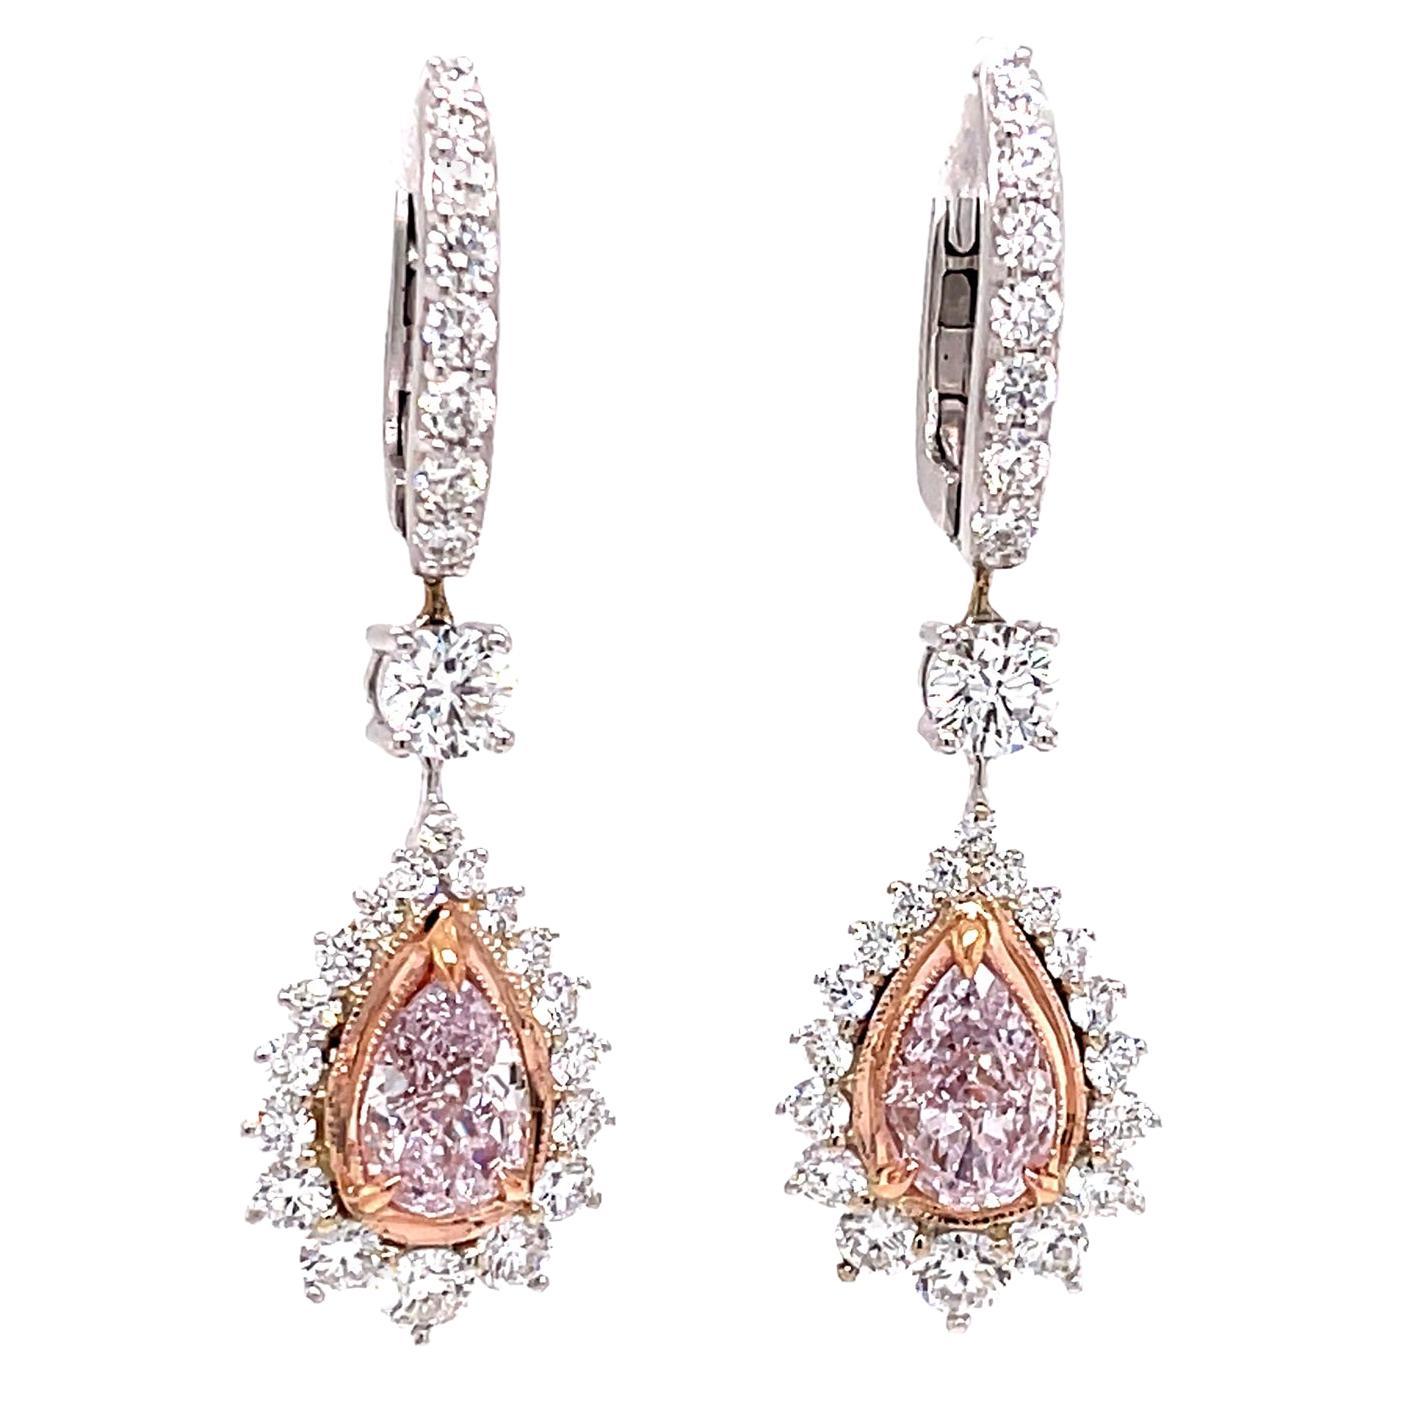 2 Karat Light Pink Diamond Tropfen Ohrringe, GIA zertifiziert, Set in 18k Weißgold.